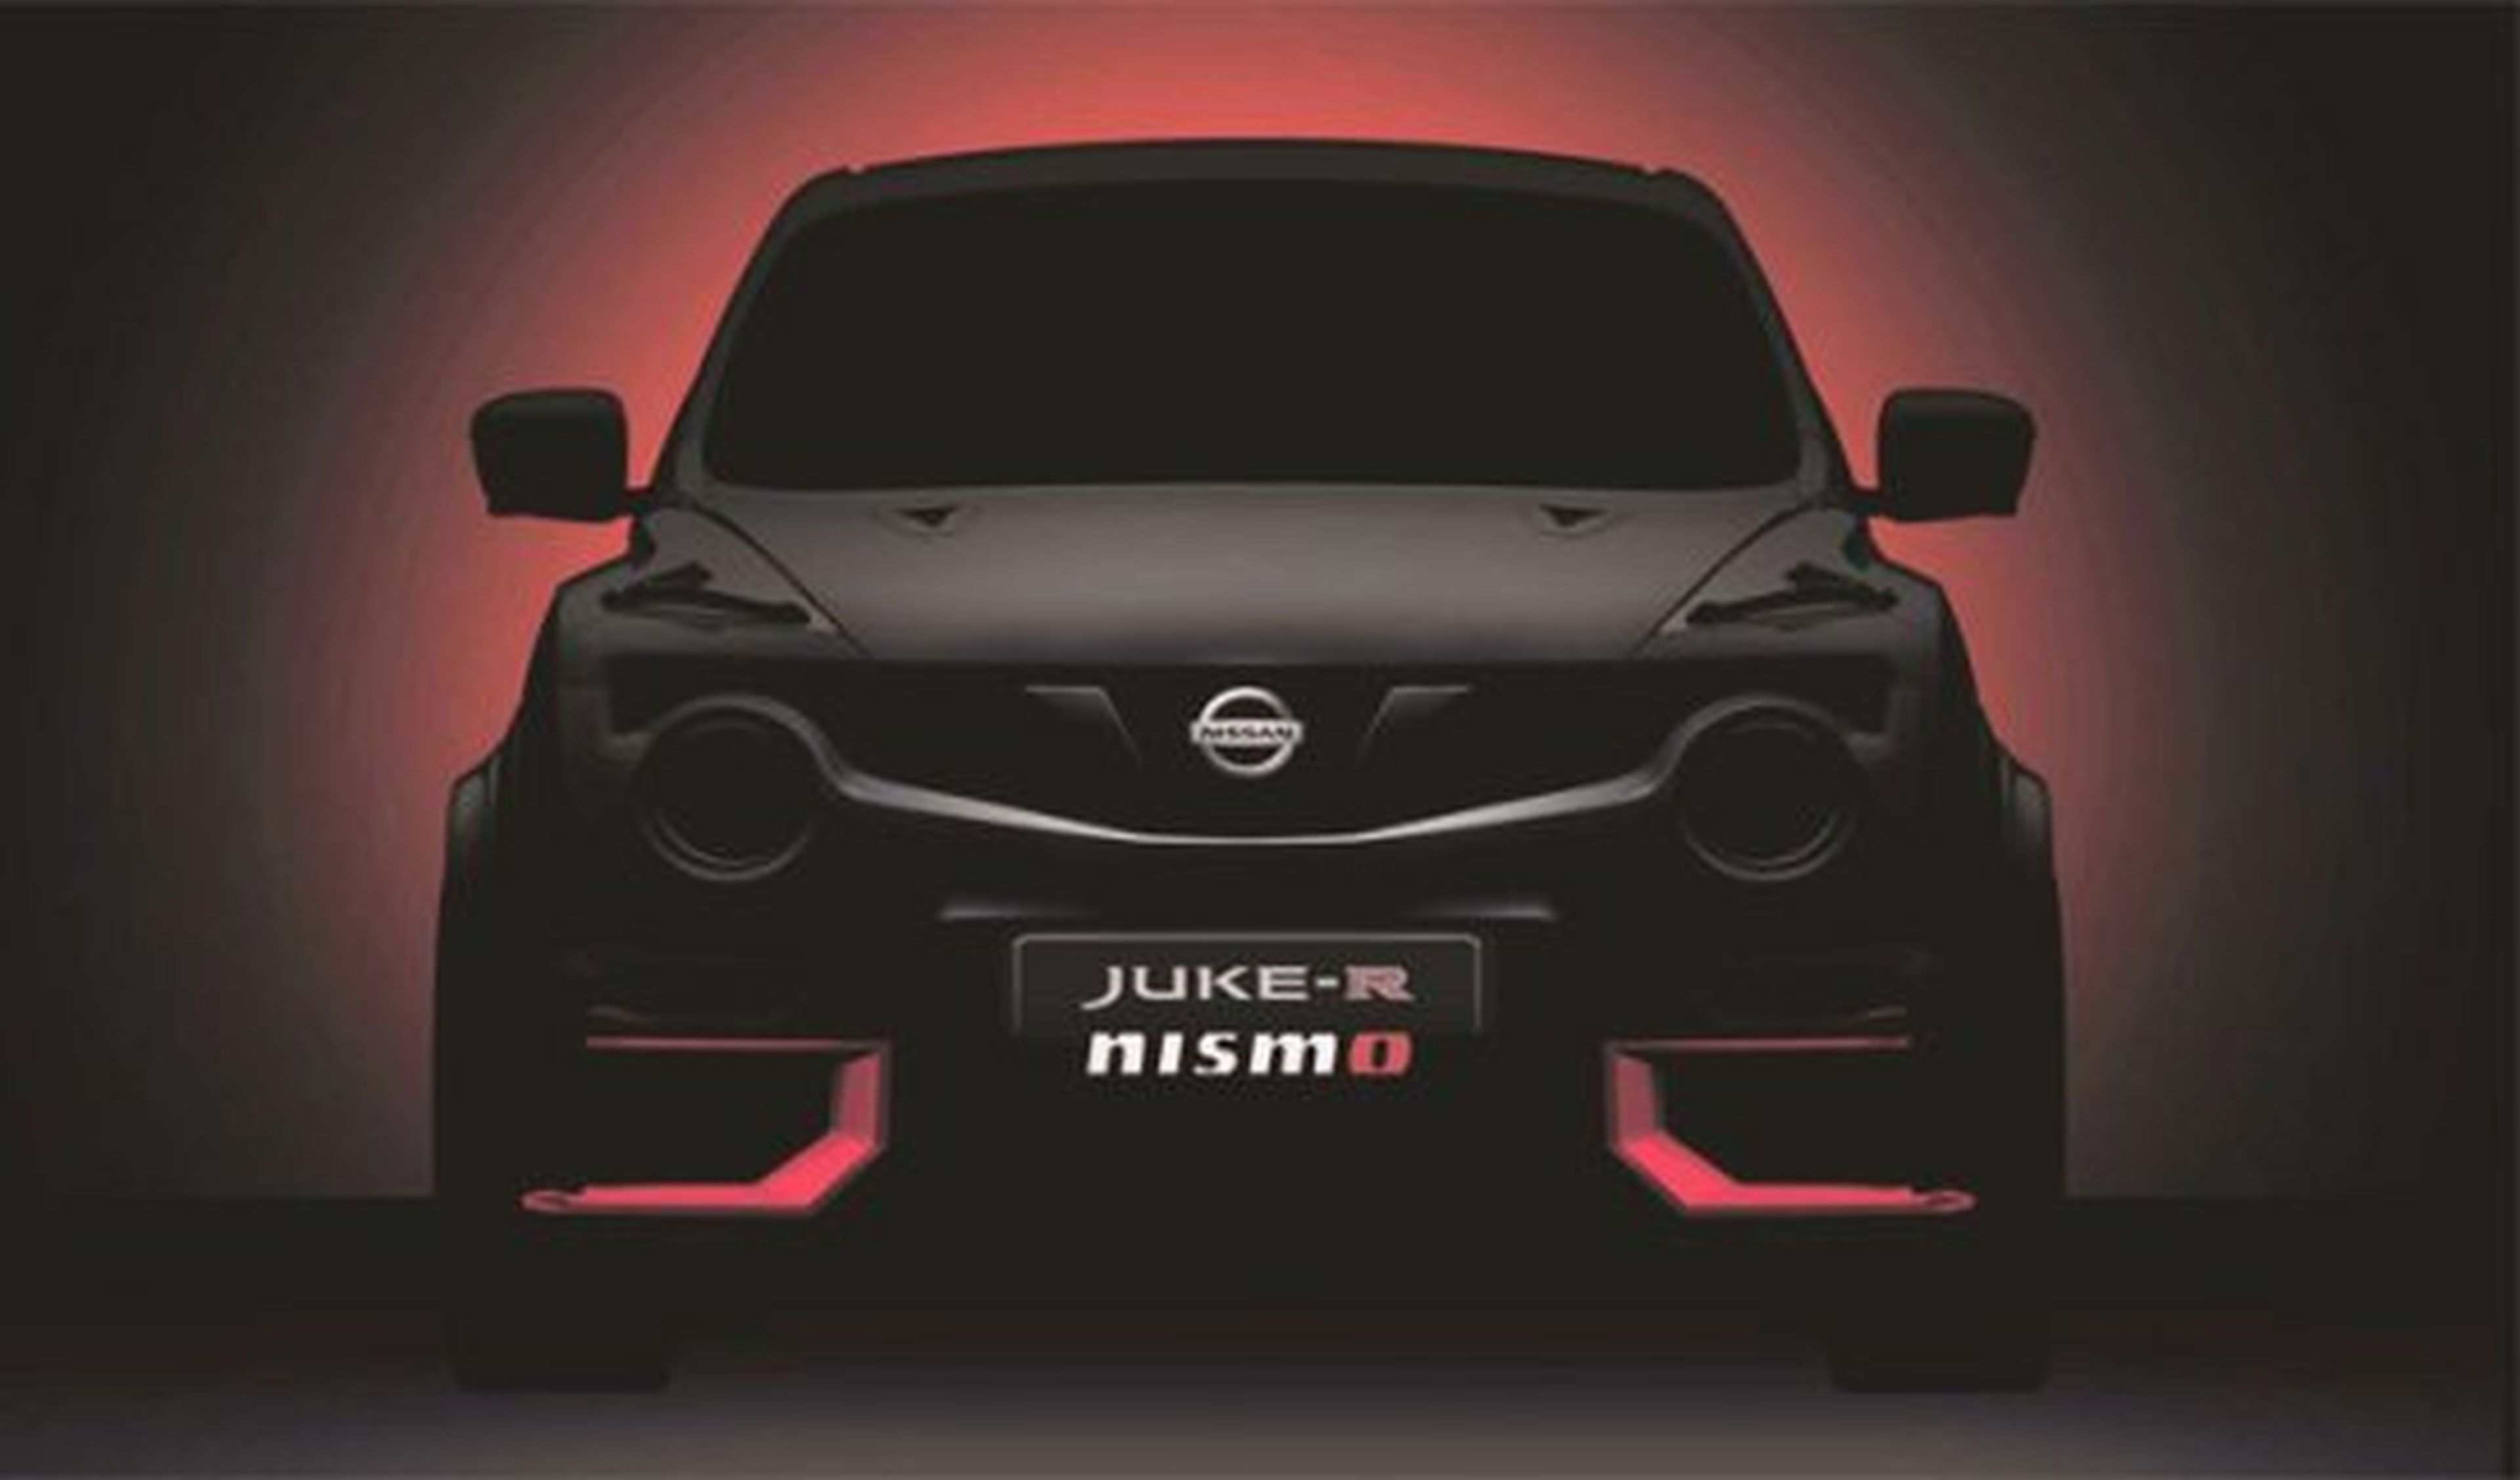 Confirmado: el Nissan Juke-R Nismo debutará en Goodwood